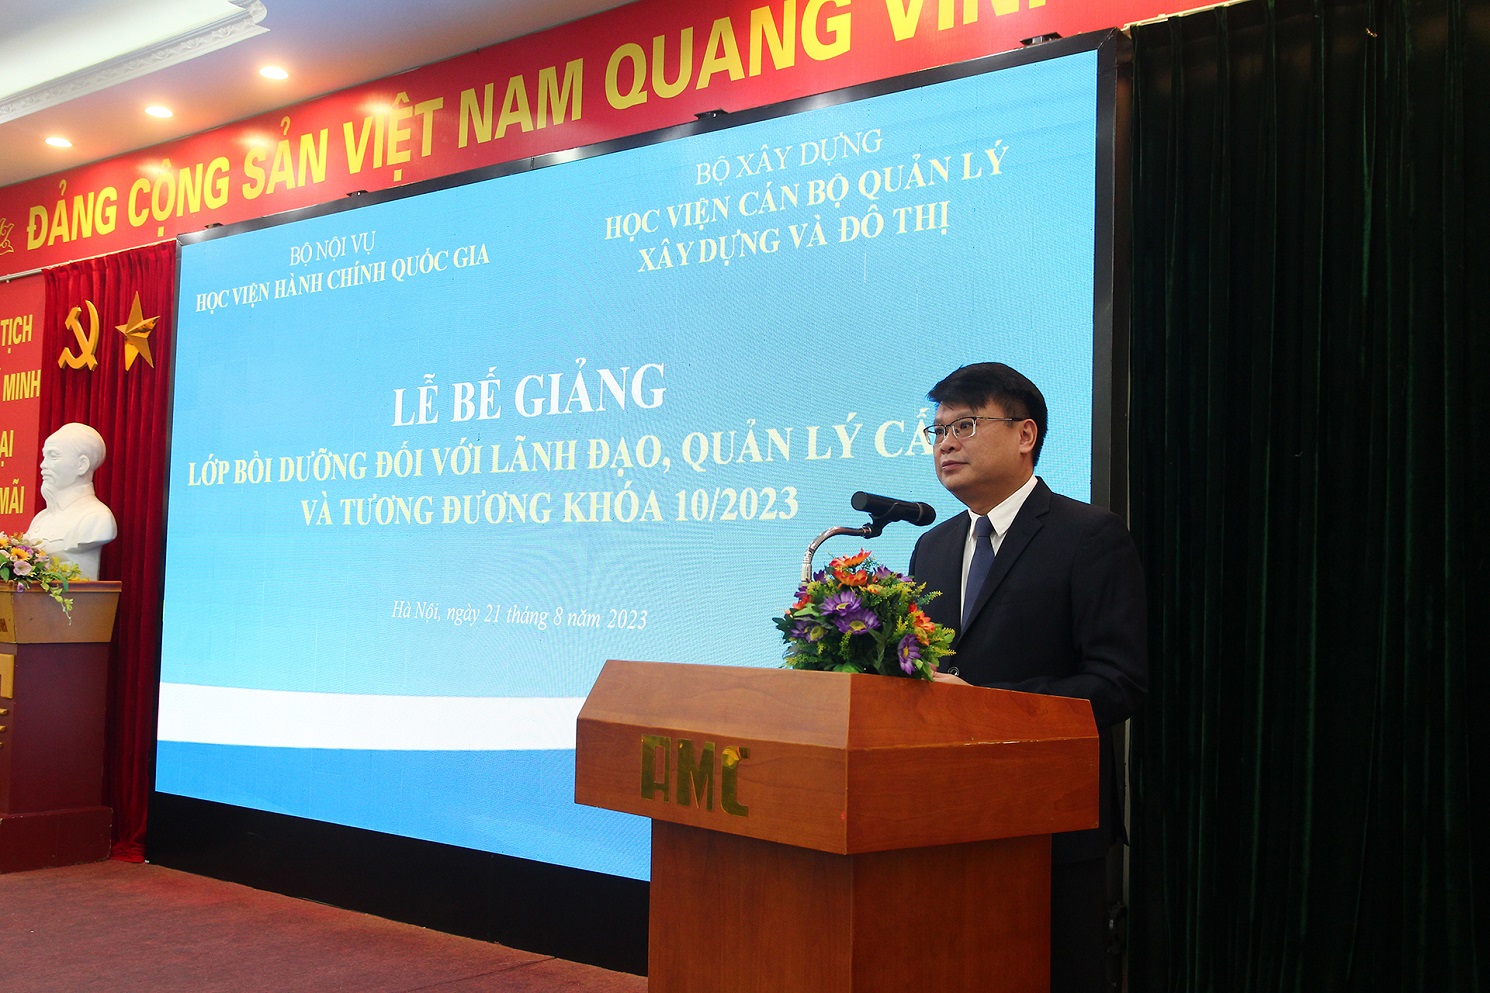 1. TS. Bùi Huy Tùng, Trưởng Ban quản lý bồi dưỡng Học viện Hành chính Quốc gia phát biểu bế giảng khóa học